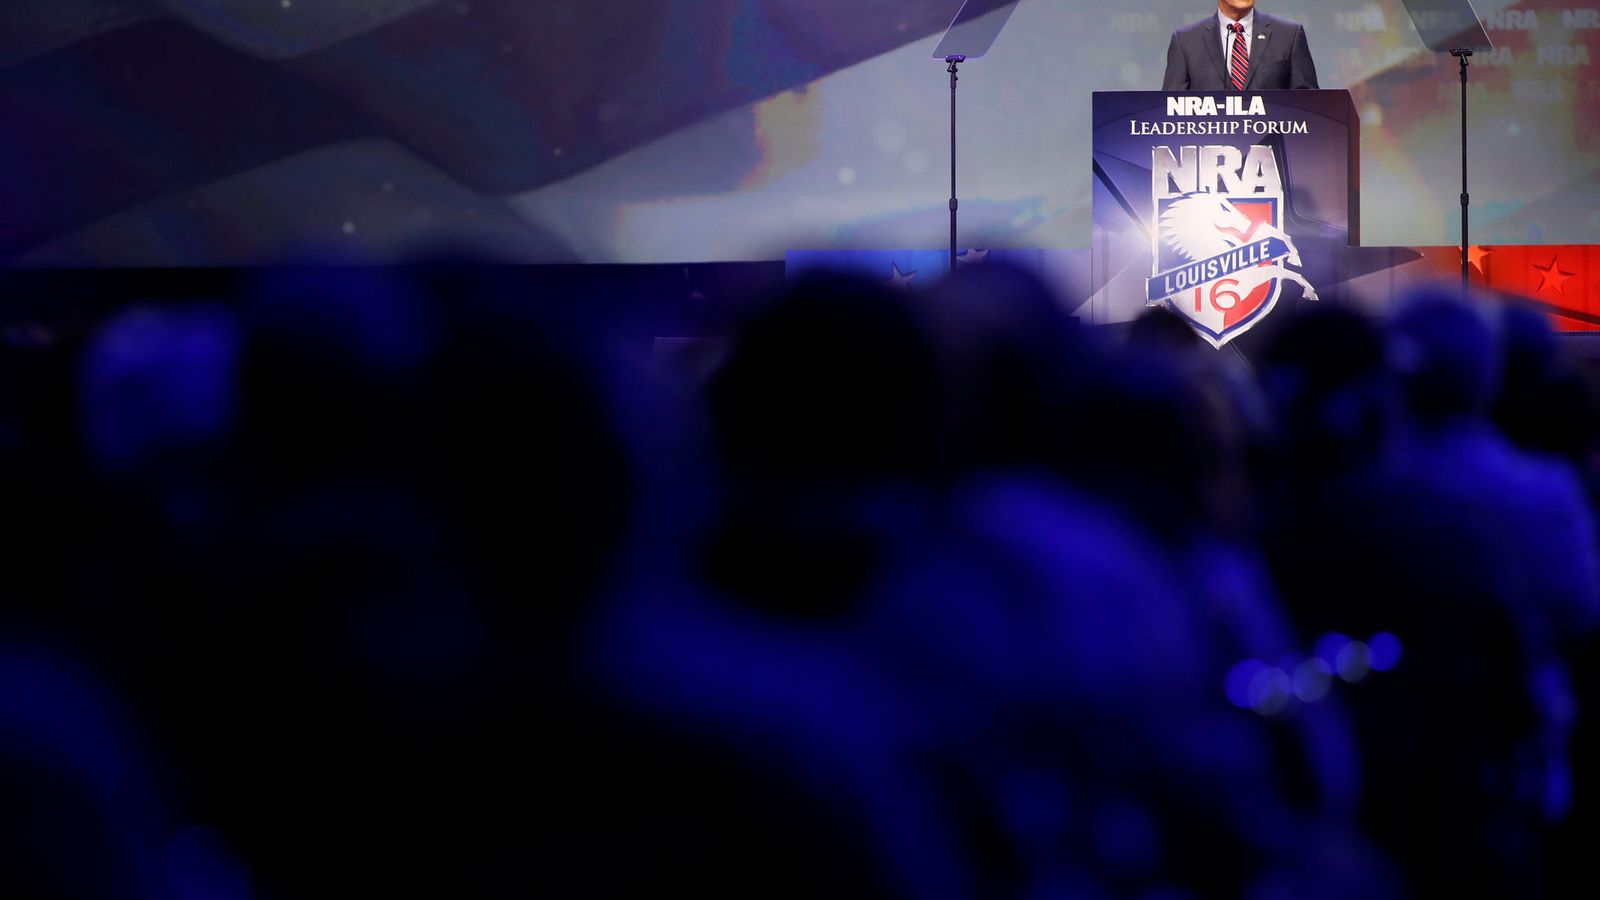 Foto: Mike Pence durante la convención de la Asociación Nacional del Rifle en Louisiville, Kentucky, en mayo de 2016 (Reuters)